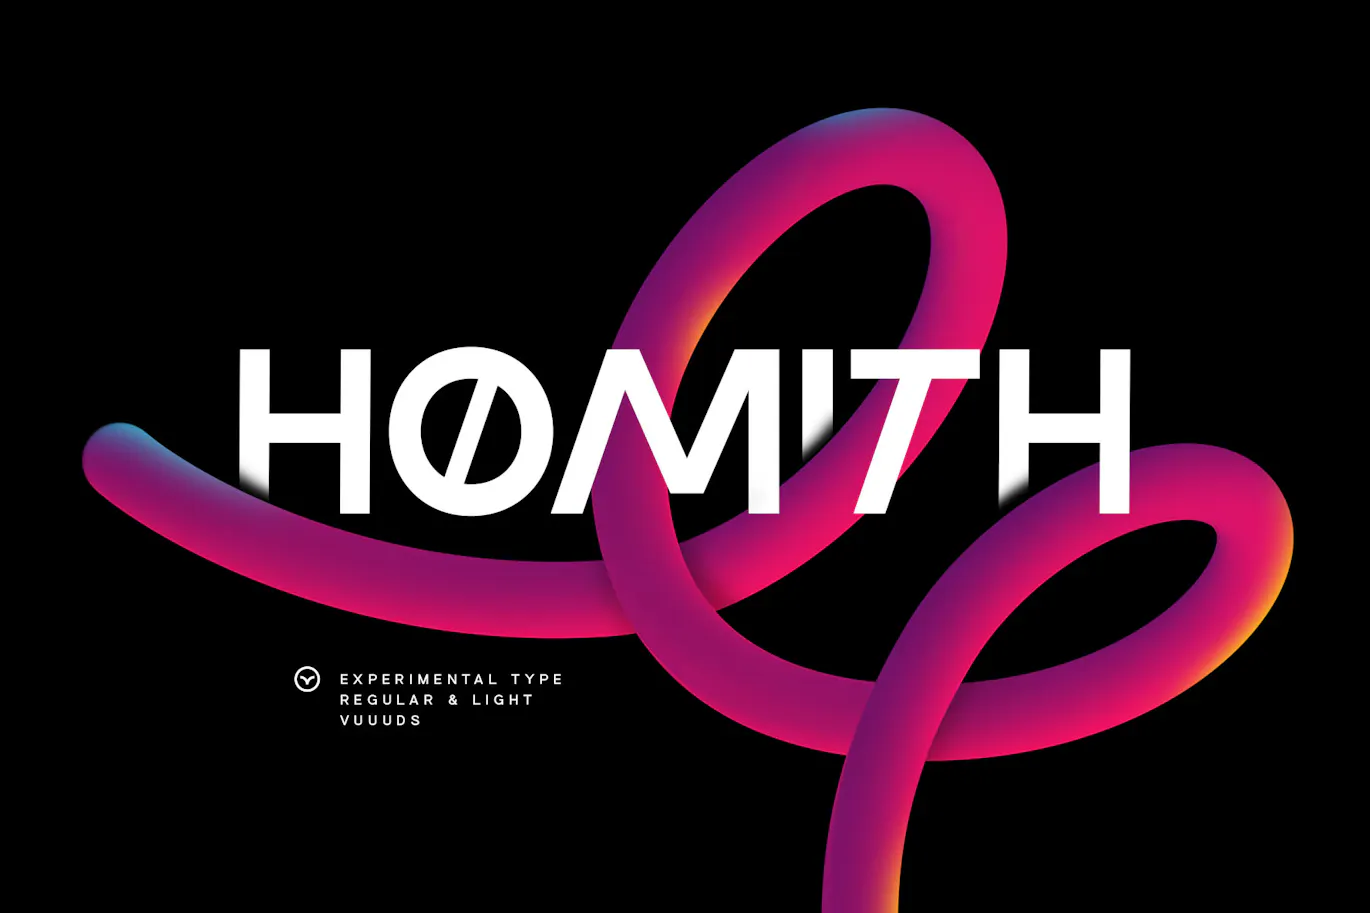 个性斜体效果的英文无衬线字体 - Homith 设计字体 第1张